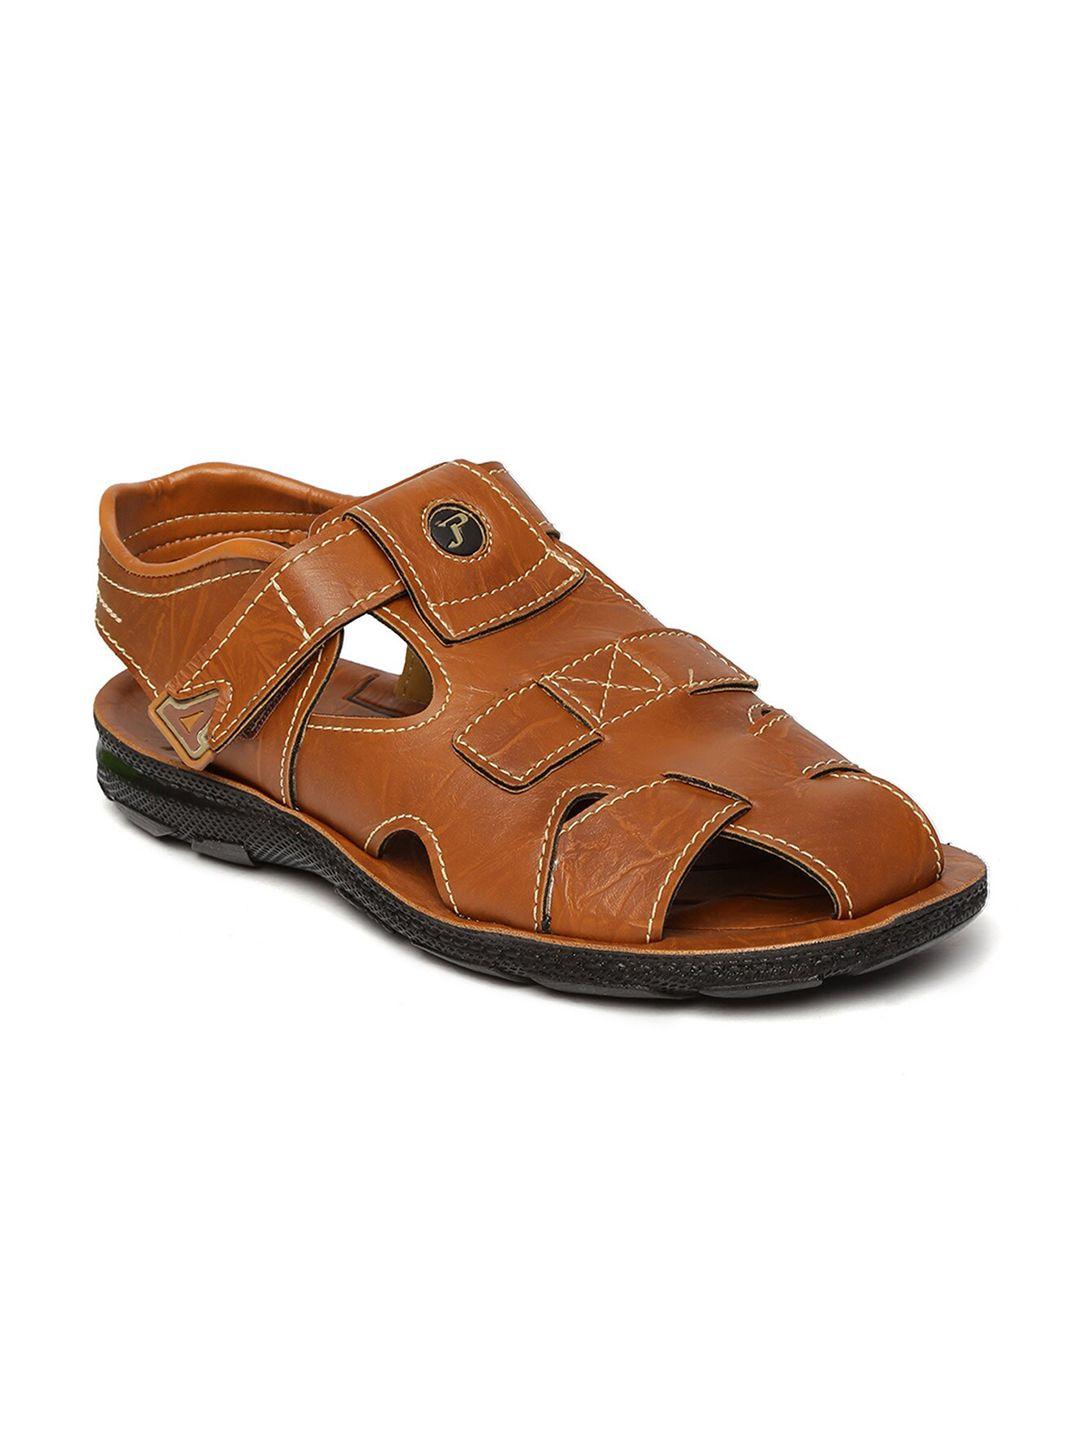 paragon-men-tan-&-black-comfort-sandals